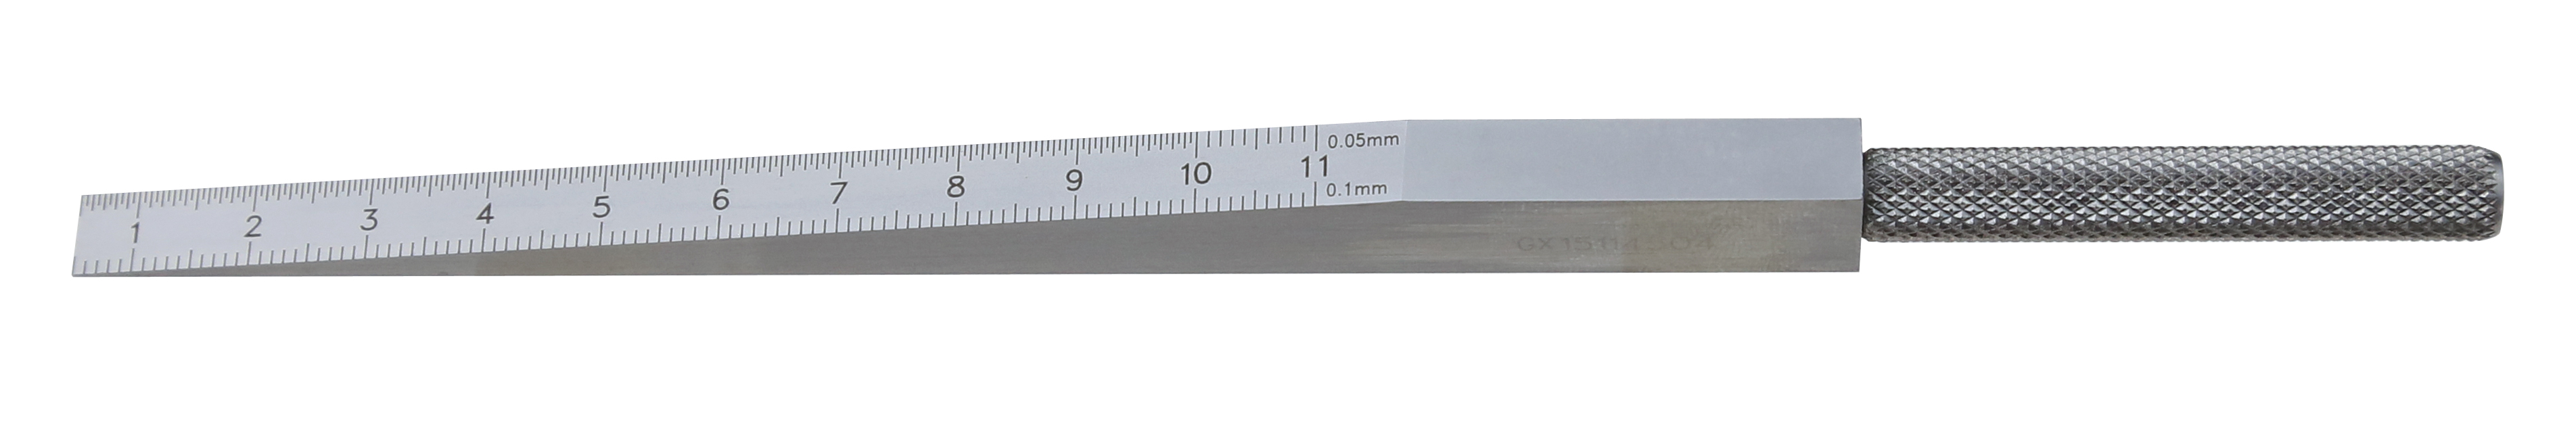 Messkeil aus Stahl Messbereich 0,5 - 11 mm